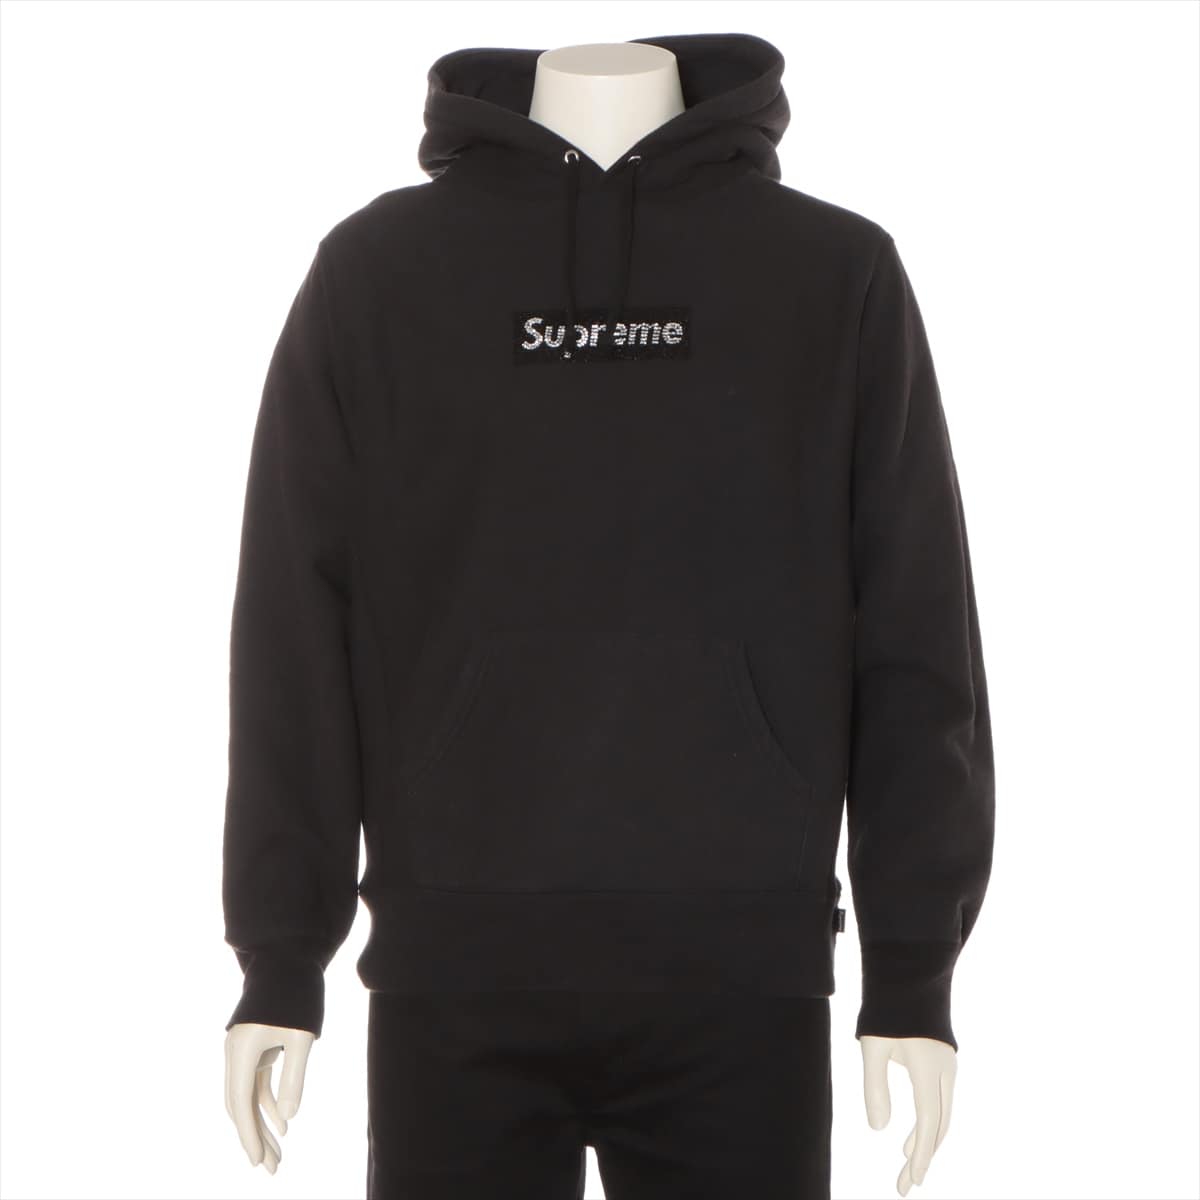 シュプリーム×スワロフスキー 19SS コットン パーカー S メンズ ブラック  Box Logo Hooded Sweatshirt  25th Anniversary